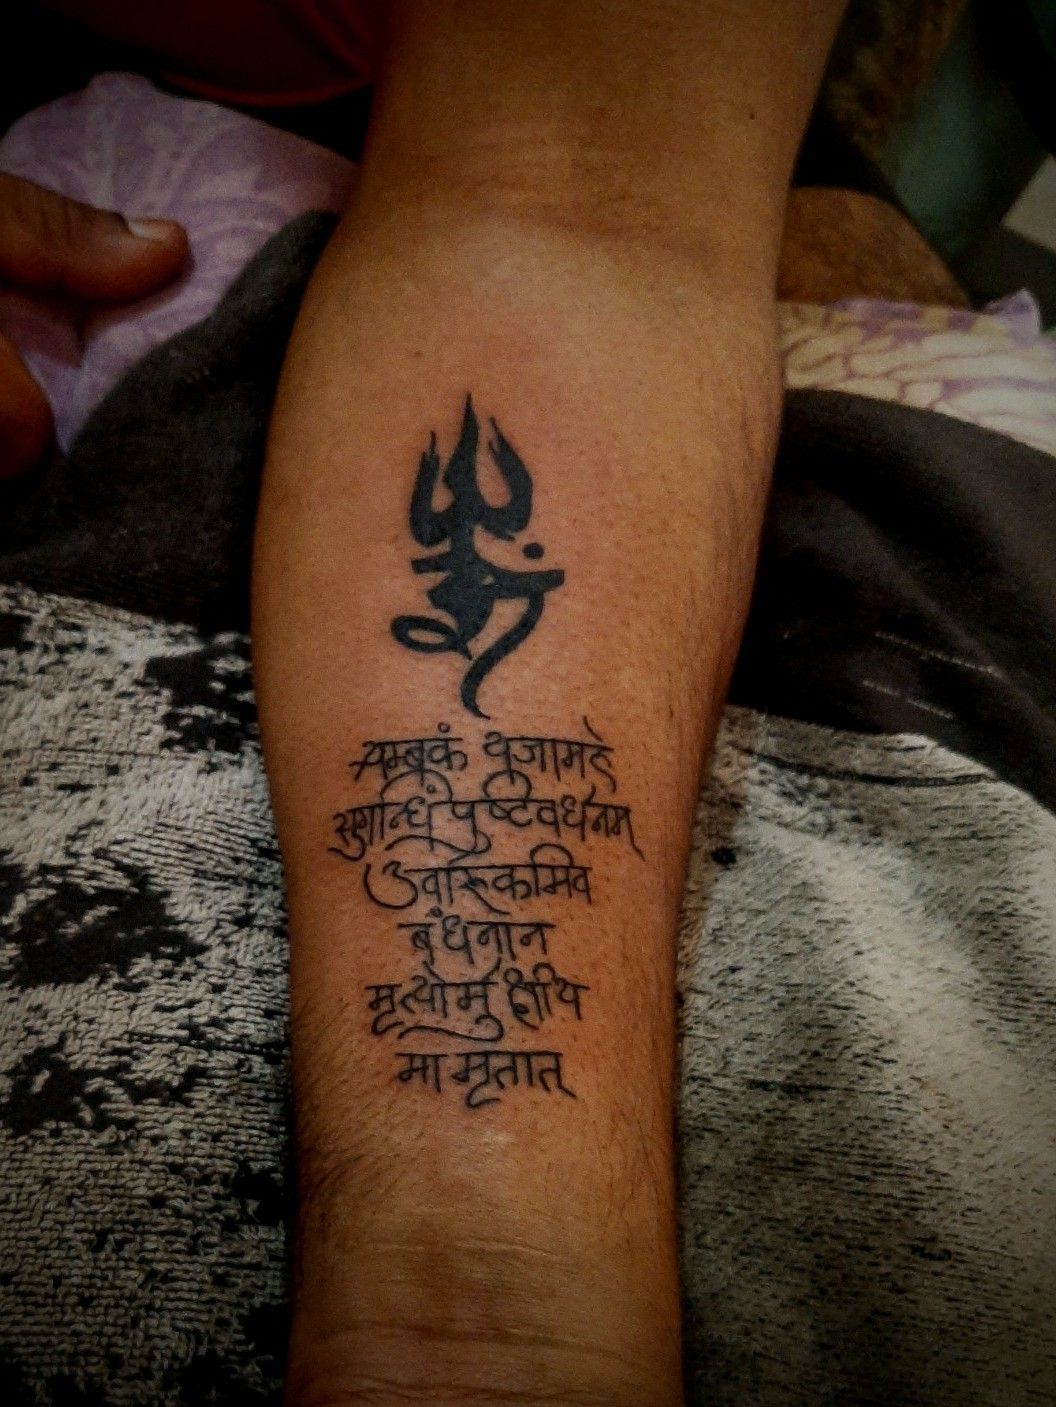 50 Best Lord Shiva Tattoos done at Aliens  Tattoohttpswwwalienstattoocompost50bestlordshivatattoos doneatalienstattoo